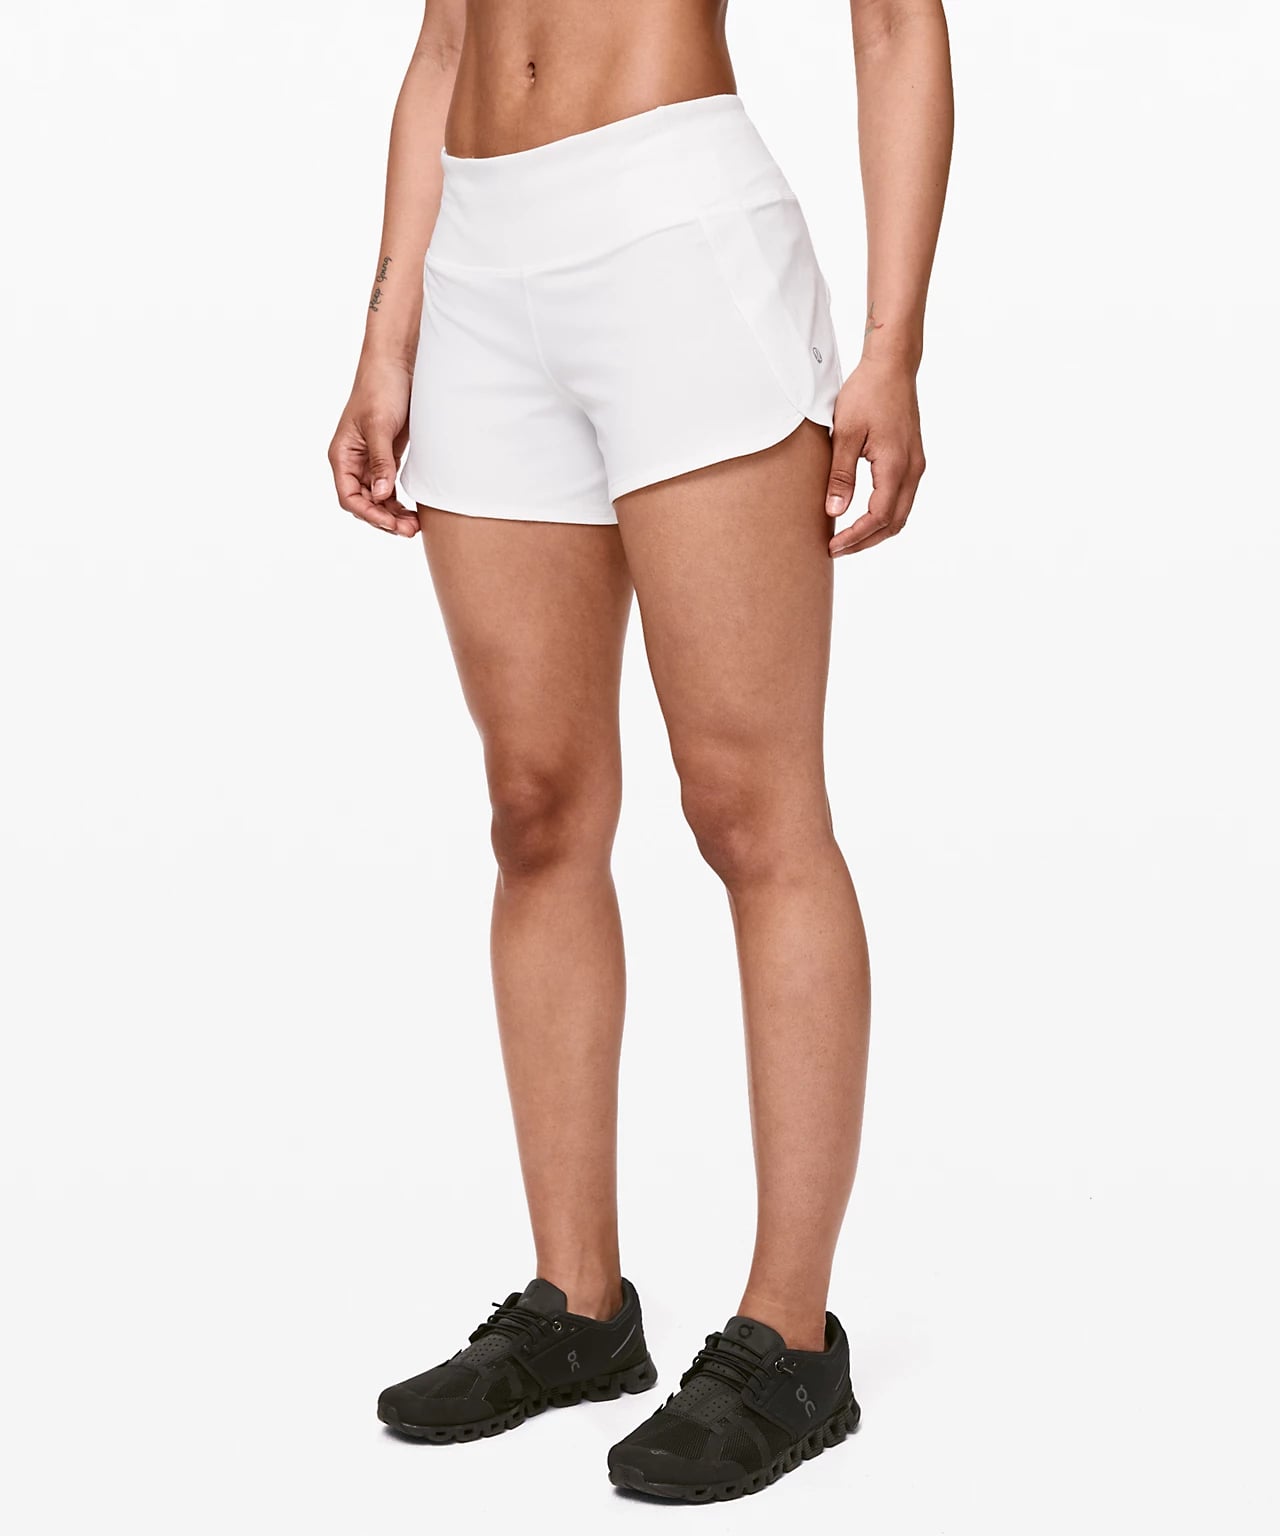 shorts similar to lululemon